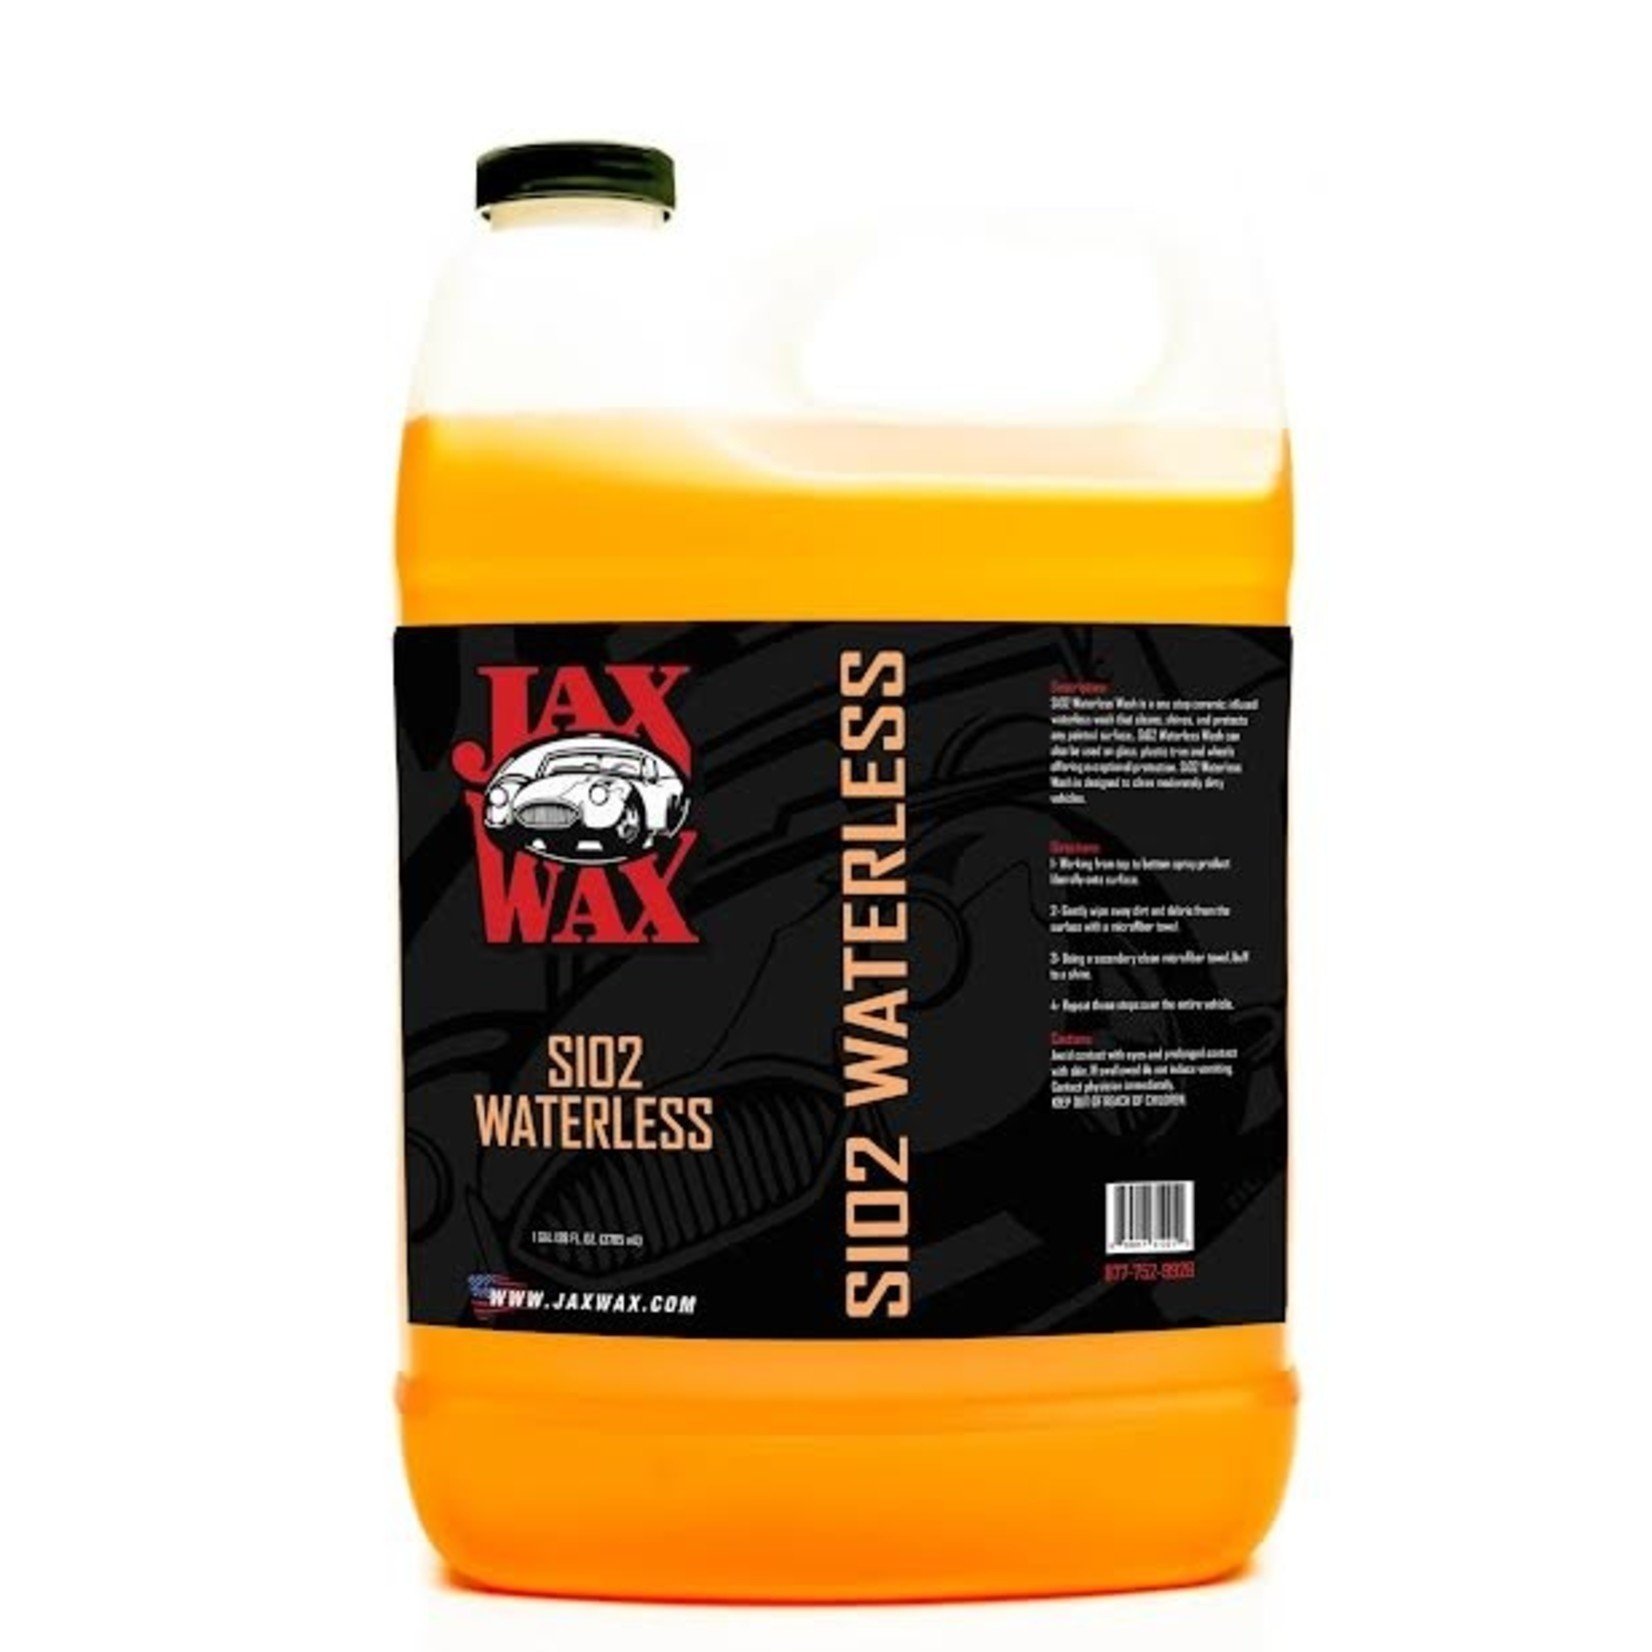 Jax Wax Si02 Waterless Wash Gallon